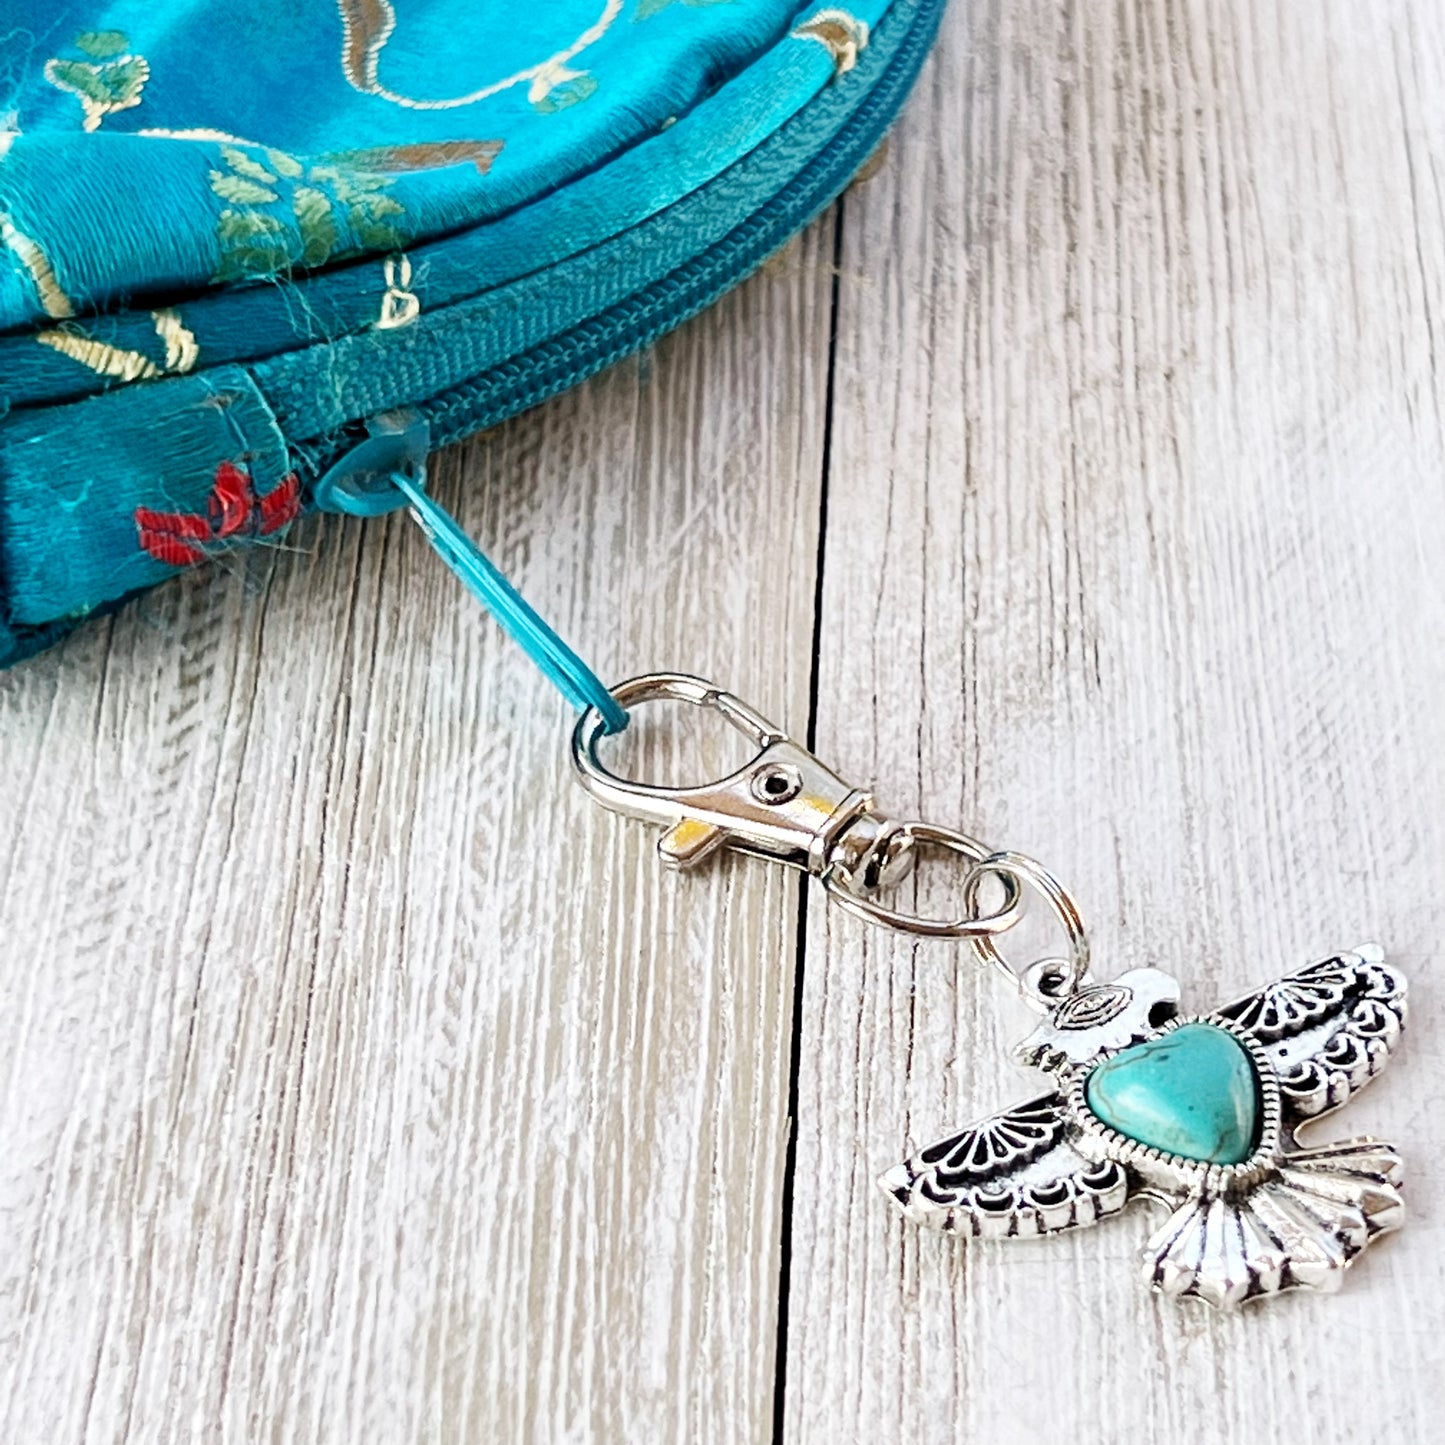 Turquoise Thunderbird Western Zipper Pull Handbag Charm - Stylish Southwest-Inspired Accessory